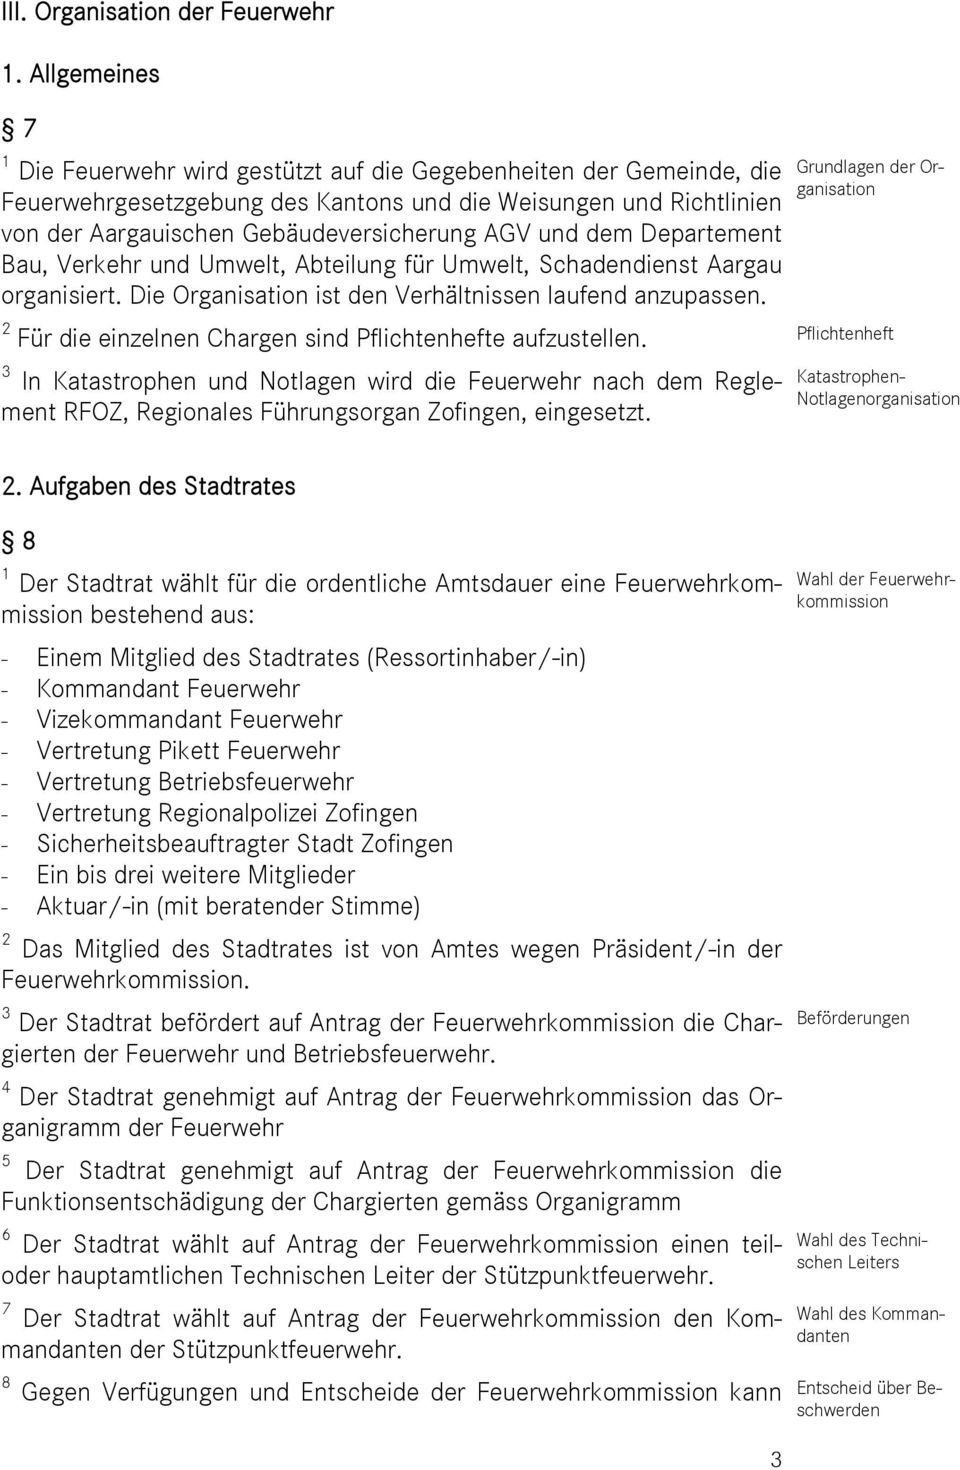 und dem Departement Bau, Verkehr und Umwelt, Abteilung für Umwelt, Schadendienst Aargau organisiert. Die Organisation ist den Verhältnissen laufend anzupassen.